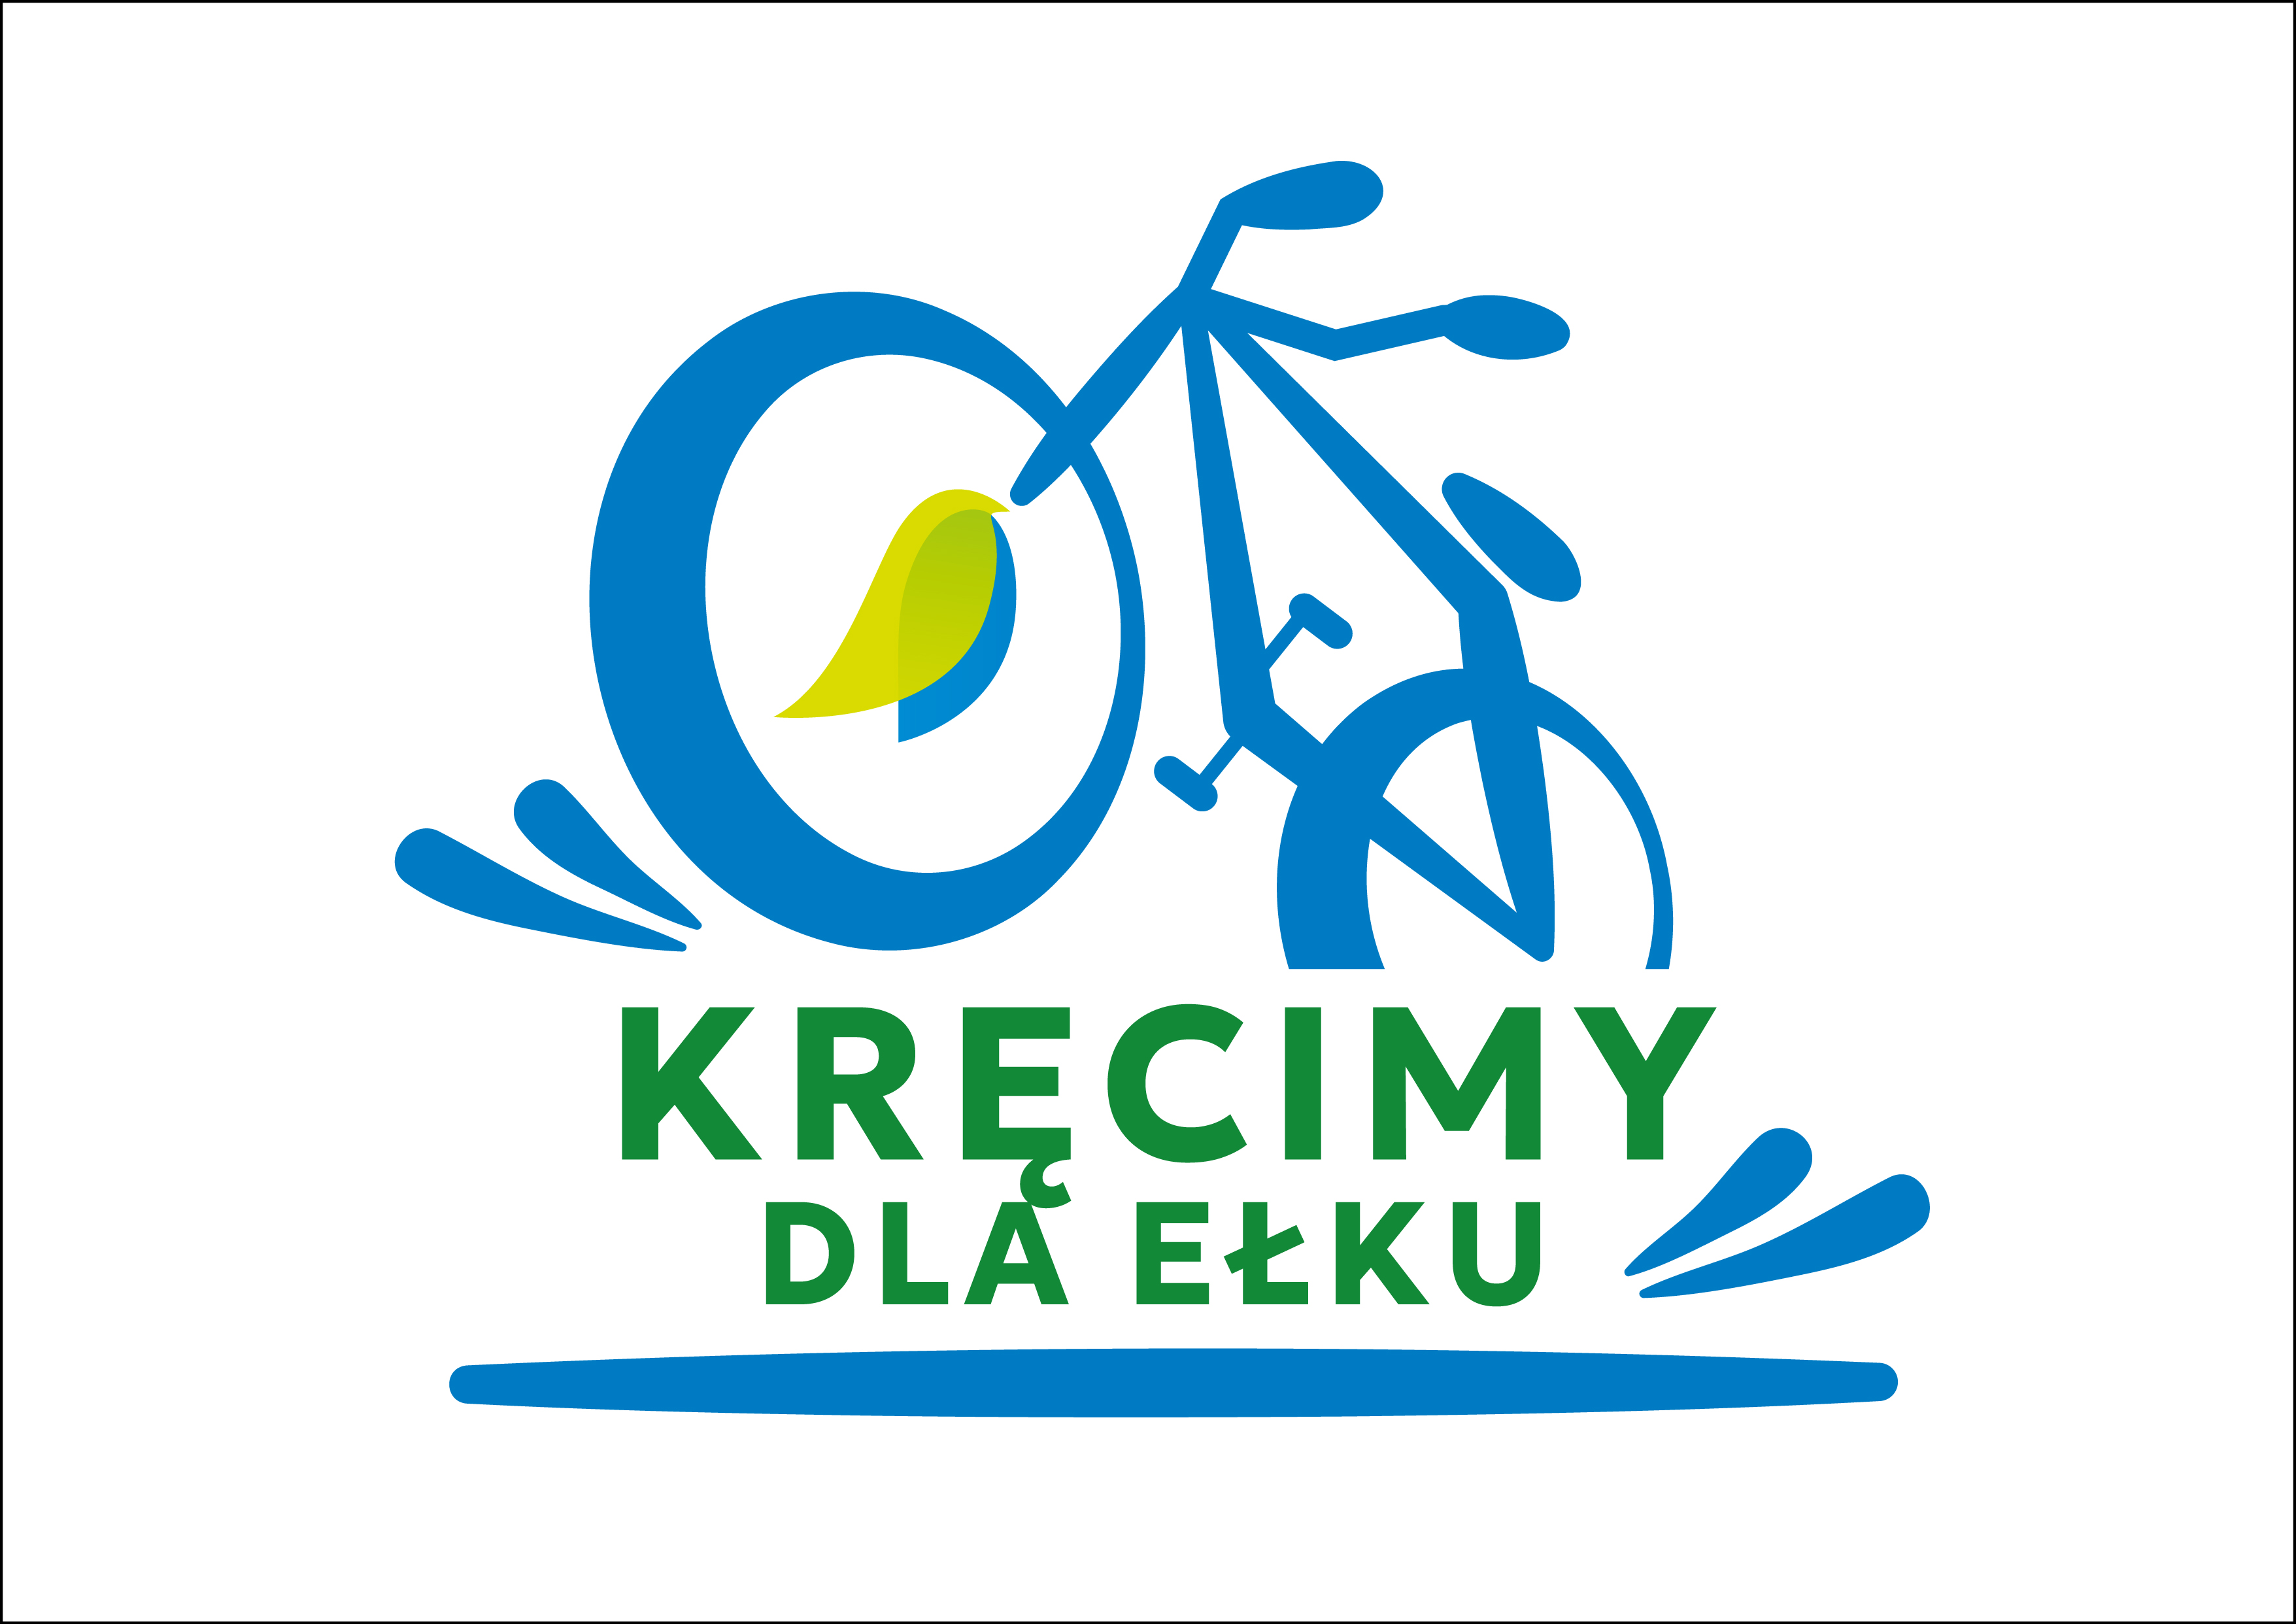 Ełk ha la possibilità di diventare la capitale ciclistica della Polonia